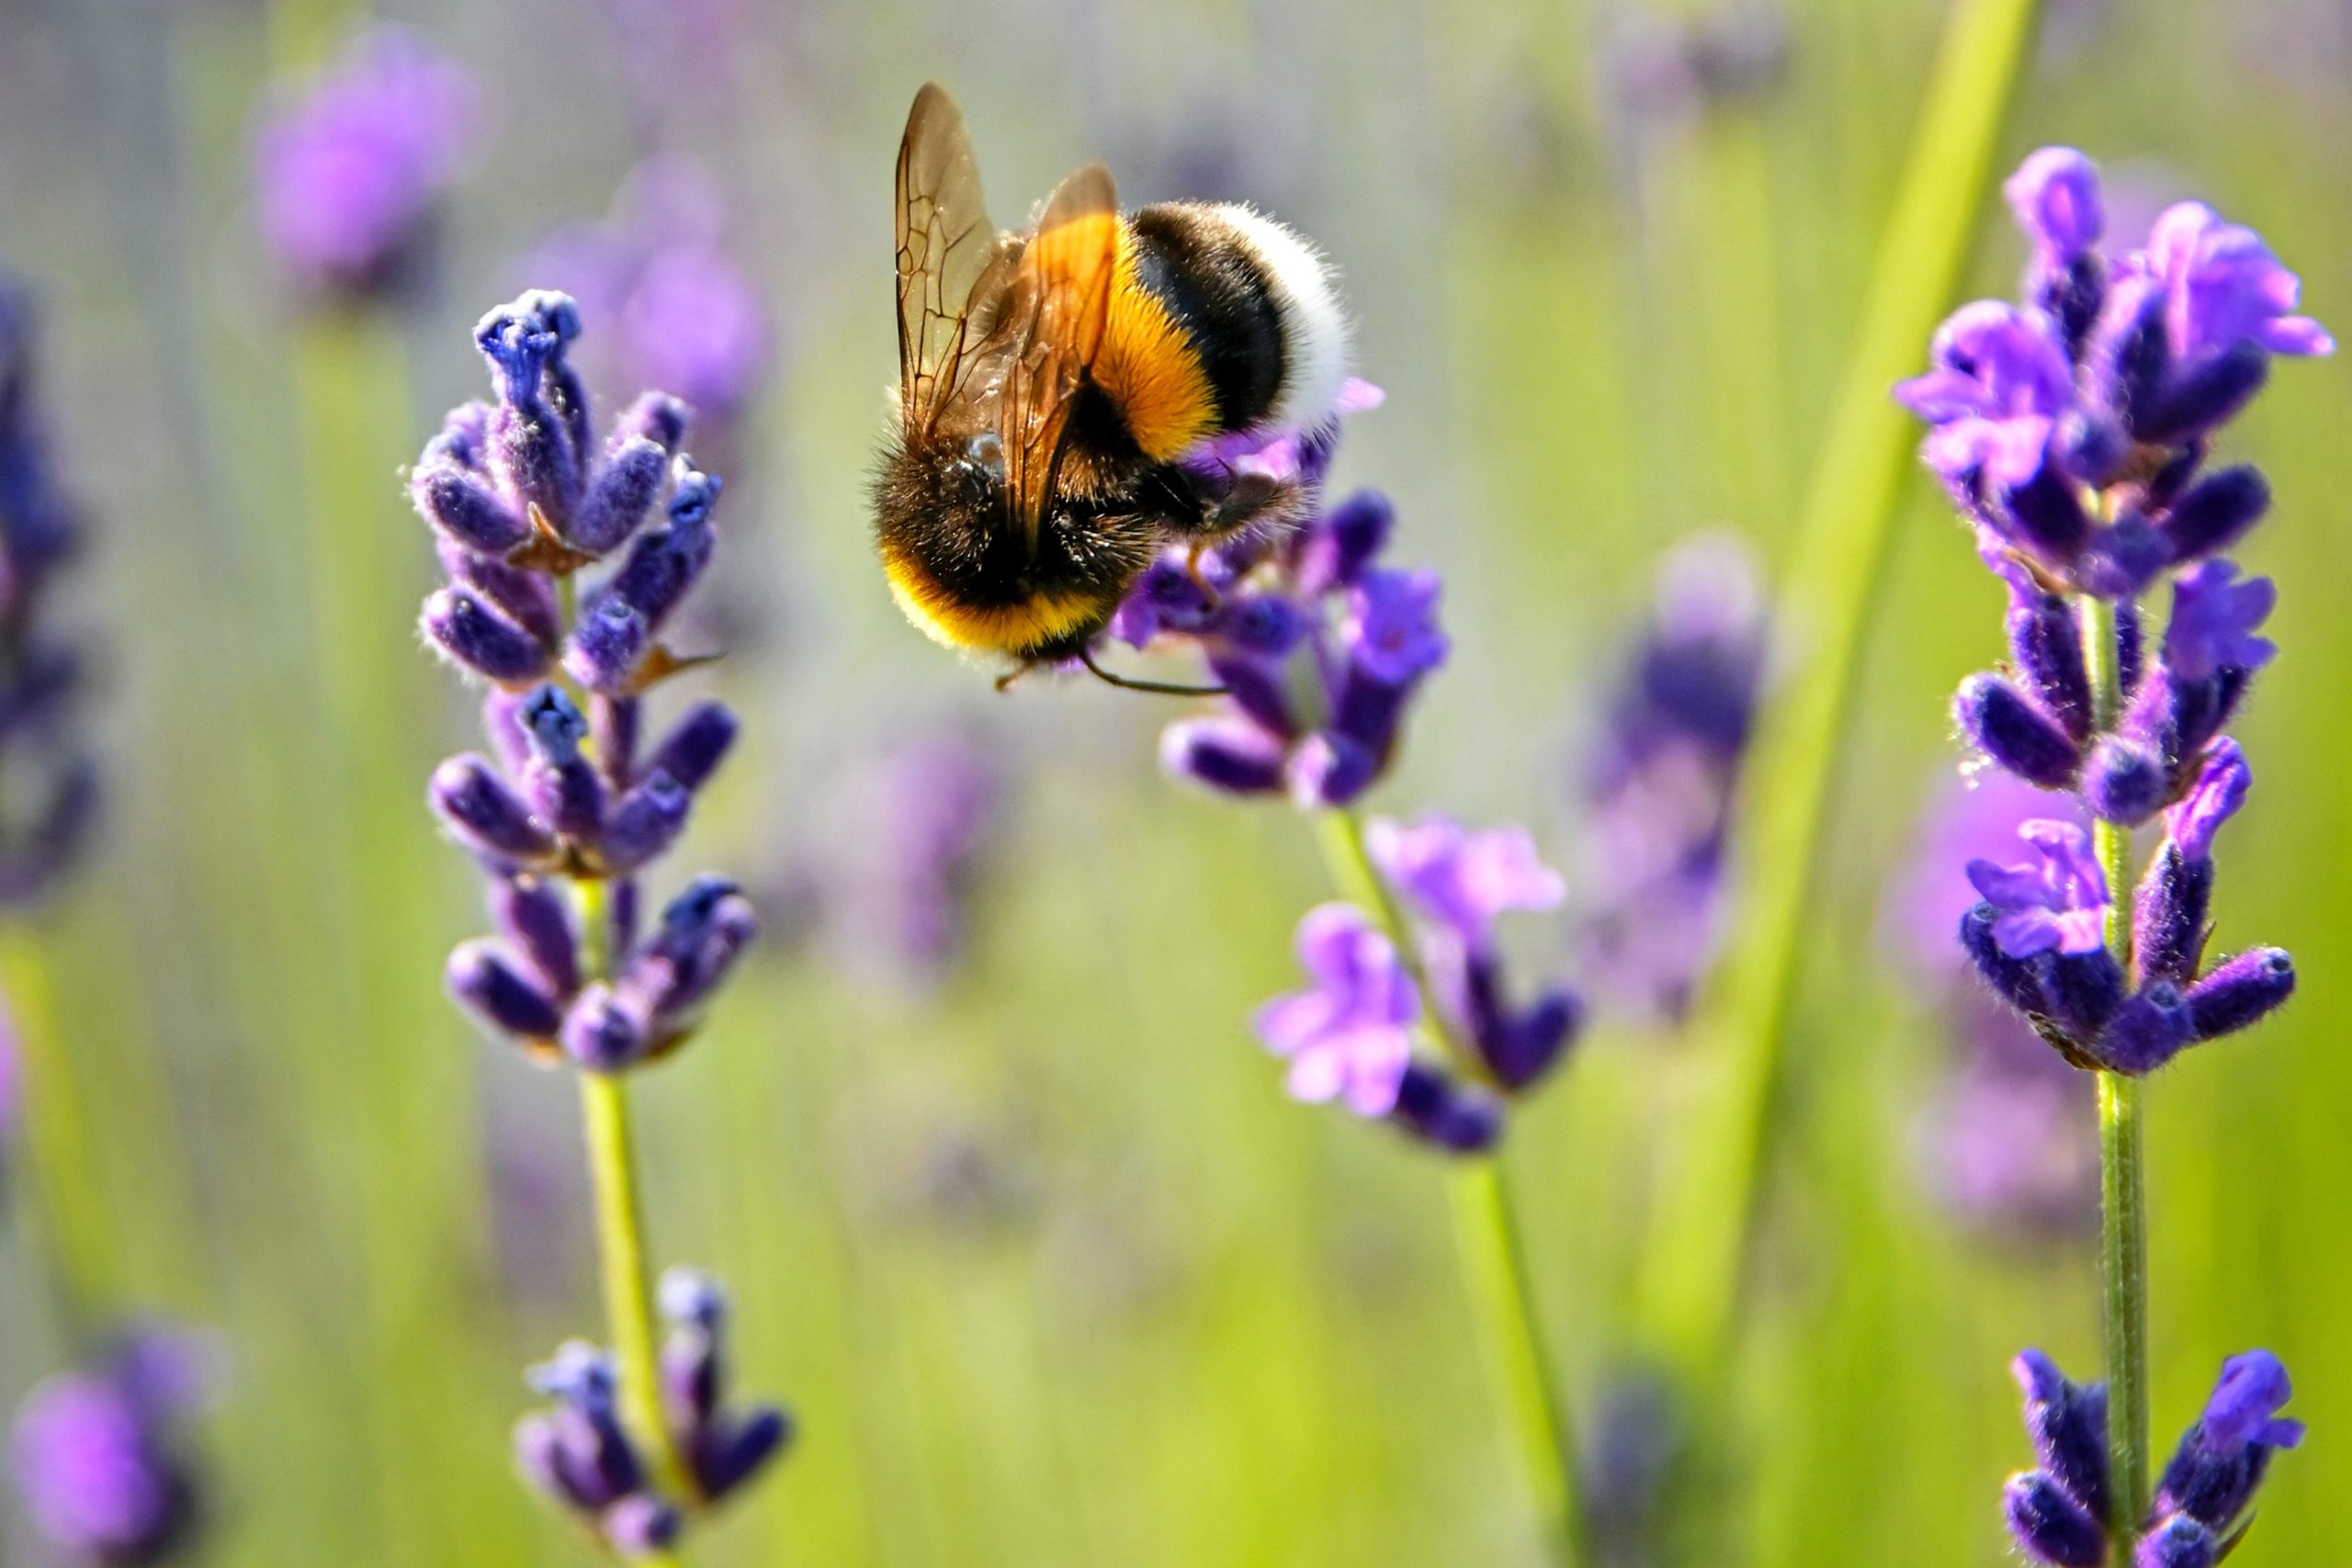 Totul despre albine: importanța pentru ecosistem, factori care cauzează declinul și cum le putem proteja